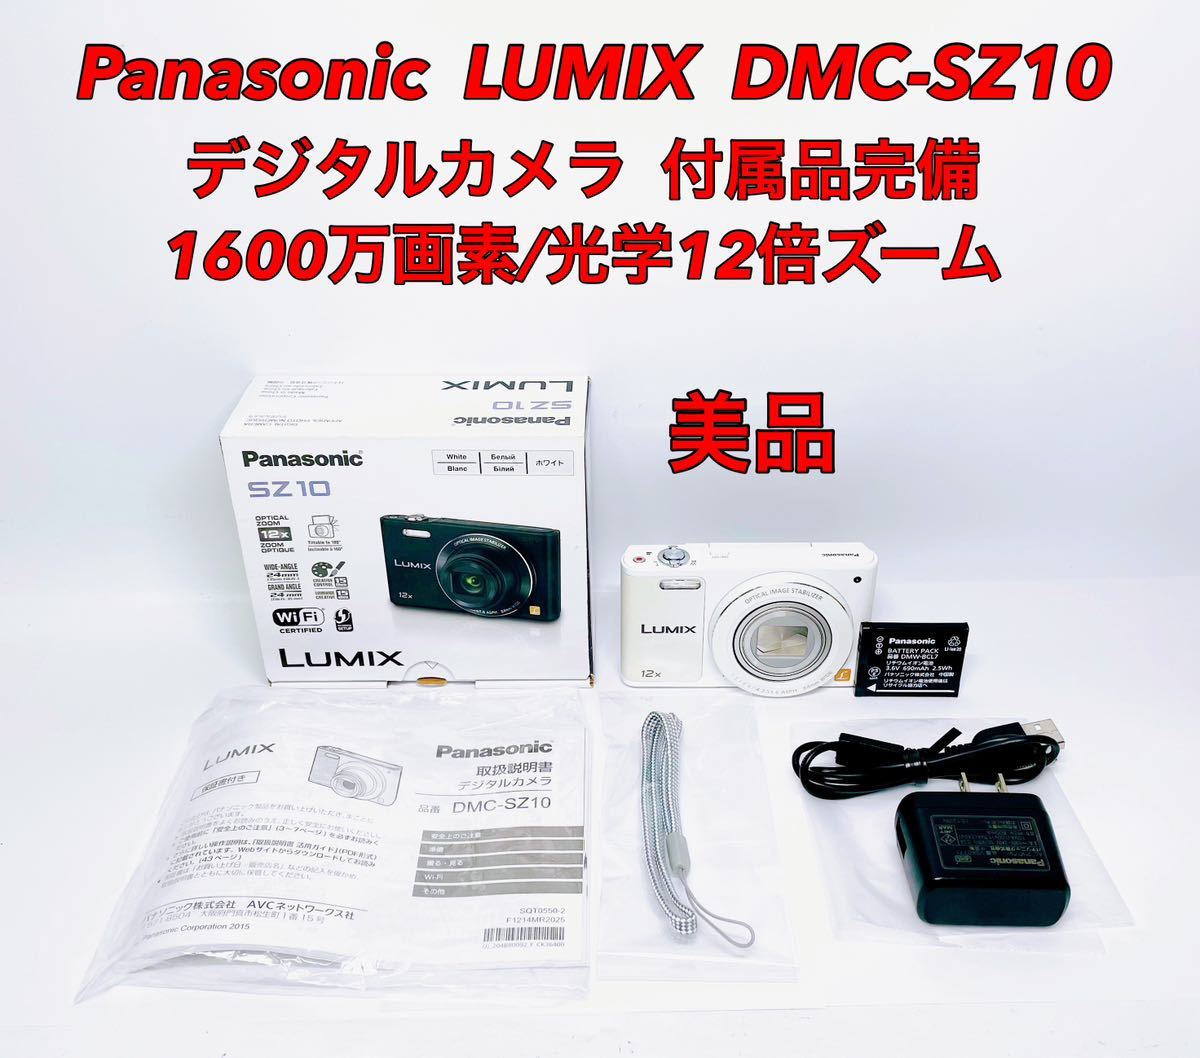 品質保証 DMC-SZ10 デジタルカメラ LUMIX パナソニック Panasonic □美